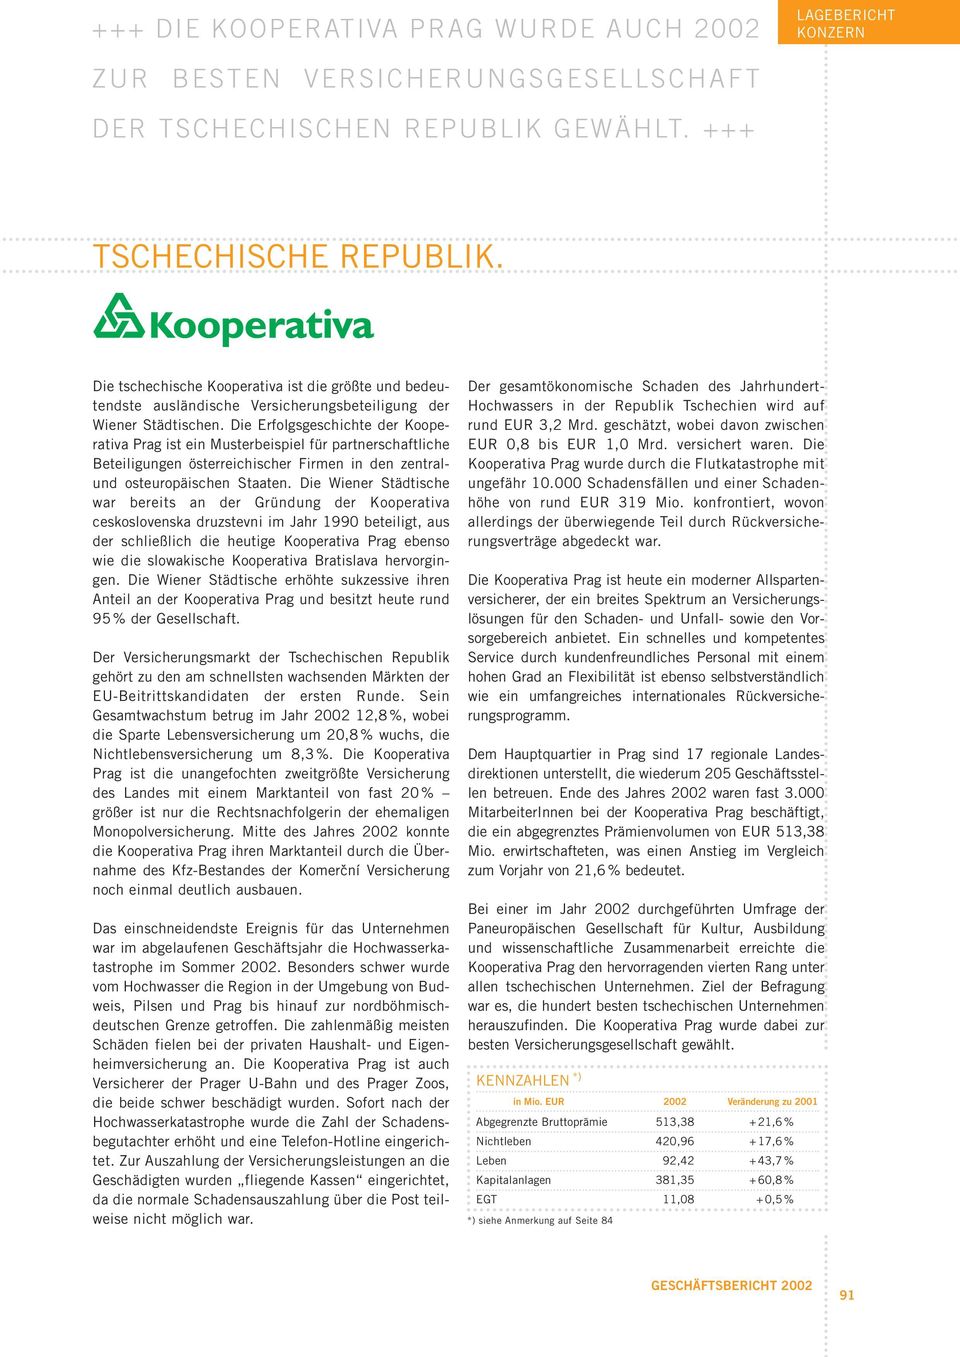 Die Erfolgsgeschichte der Kooperativa Prag ist ein Musterbeispiel für partnerschaftliche Beteiligungen österreichischer Firmen in den zentralund osteuropäischen Staaten.